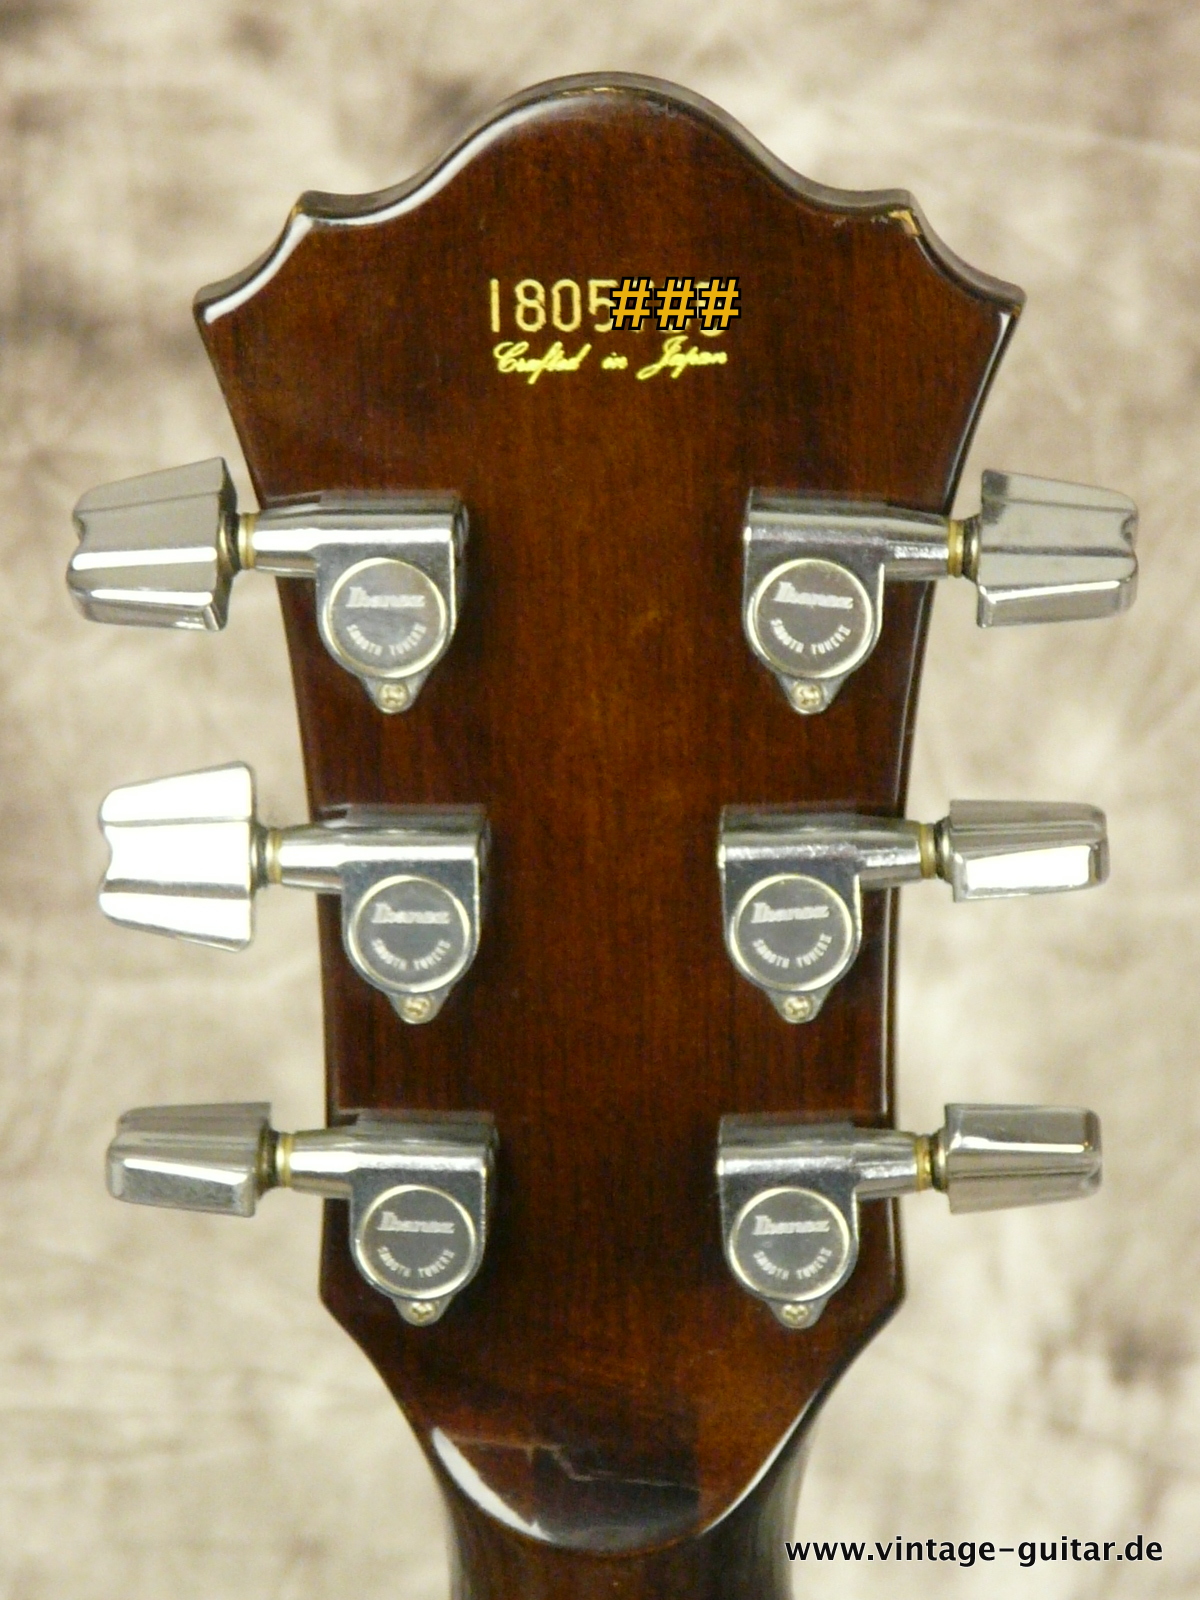 Ibanez Fa 100 1980 Sunburst Guitar For Sale Vintage Guitar Oldenburg